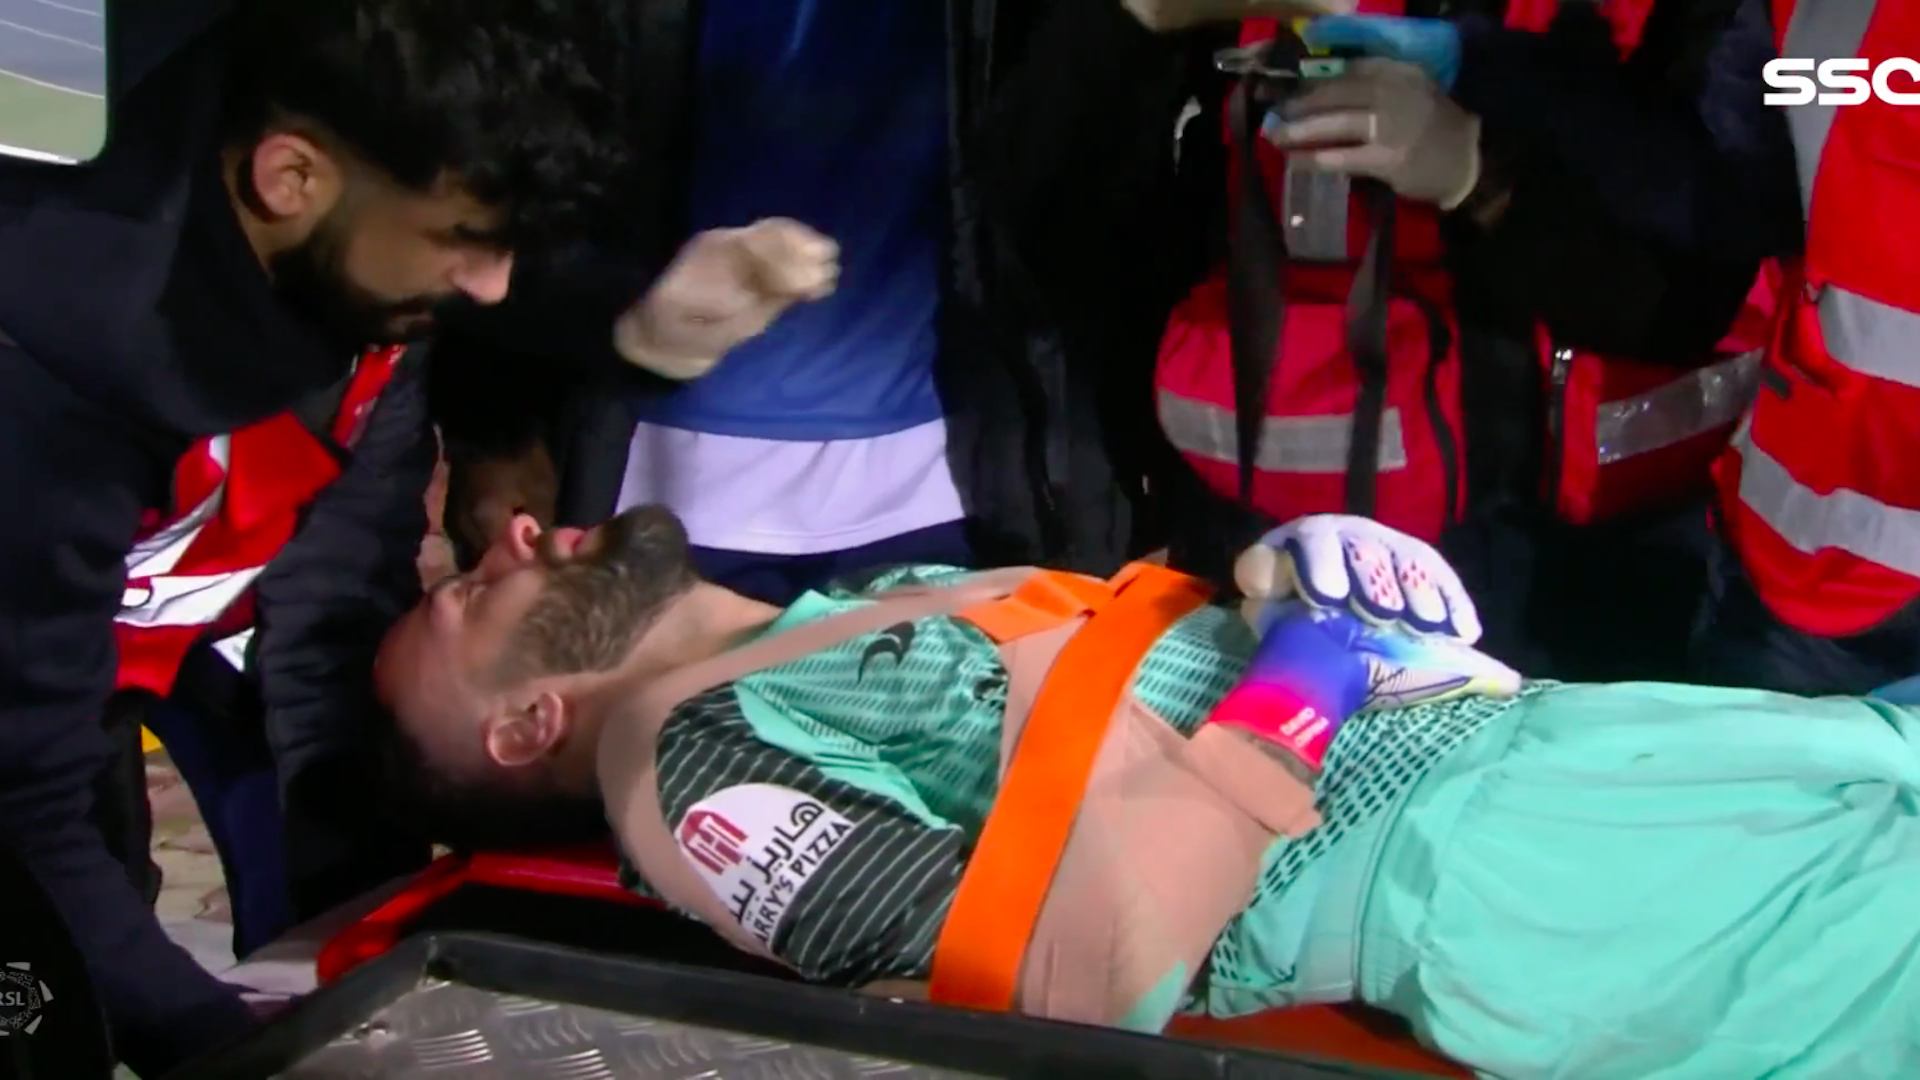 As imagens chocantes da lesão de David Ospina no sábado, 14 de janeiro na Liga Profissional Saudita / (Twitter: @ssc_sports)